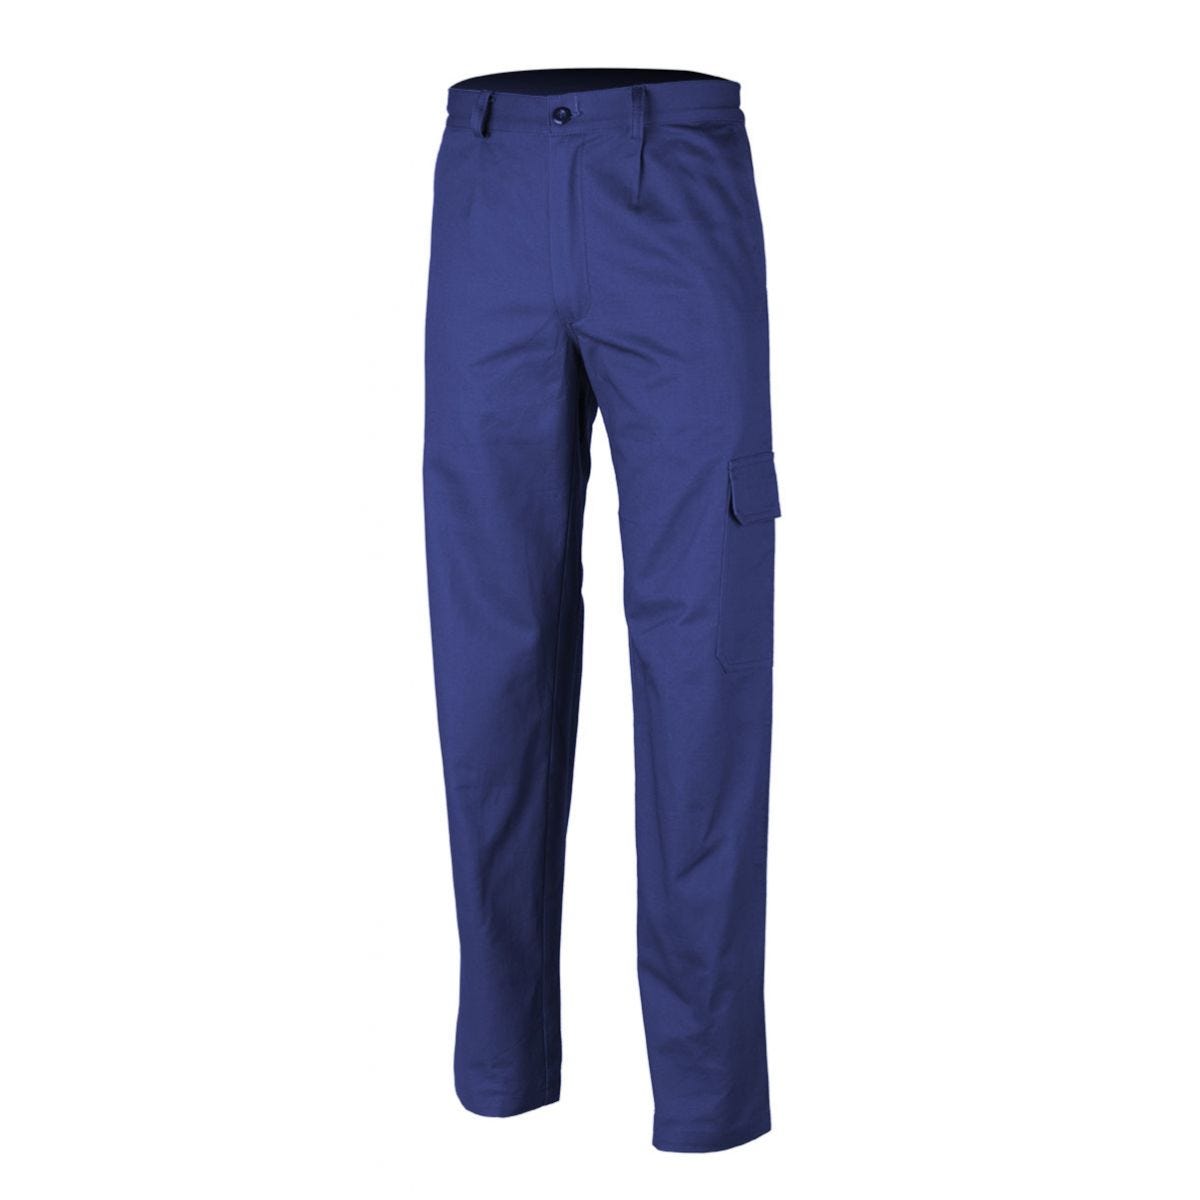 Pantalon PARTNER bleu royal - COVERGUARD - Taille 3XL 0